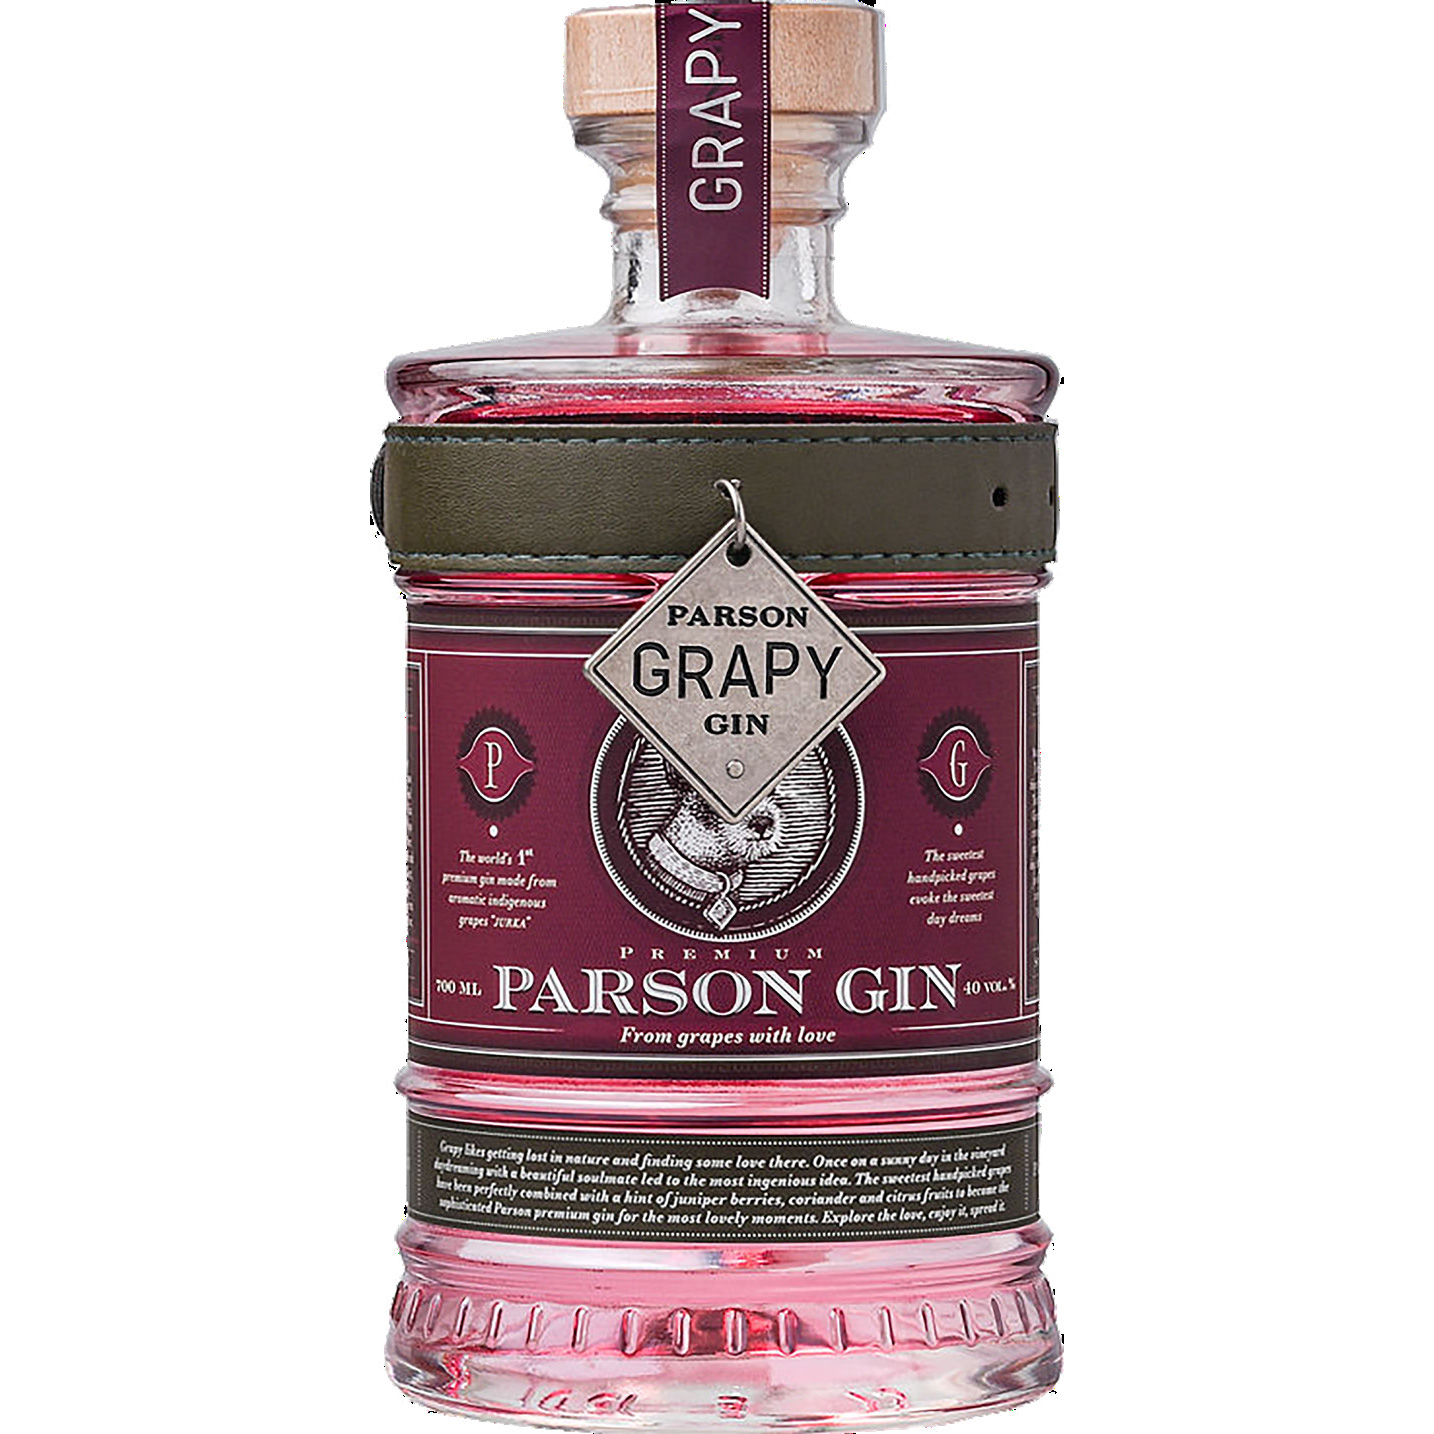 Brug Parson Grapy Premium Gin til en forbedret oplevelse